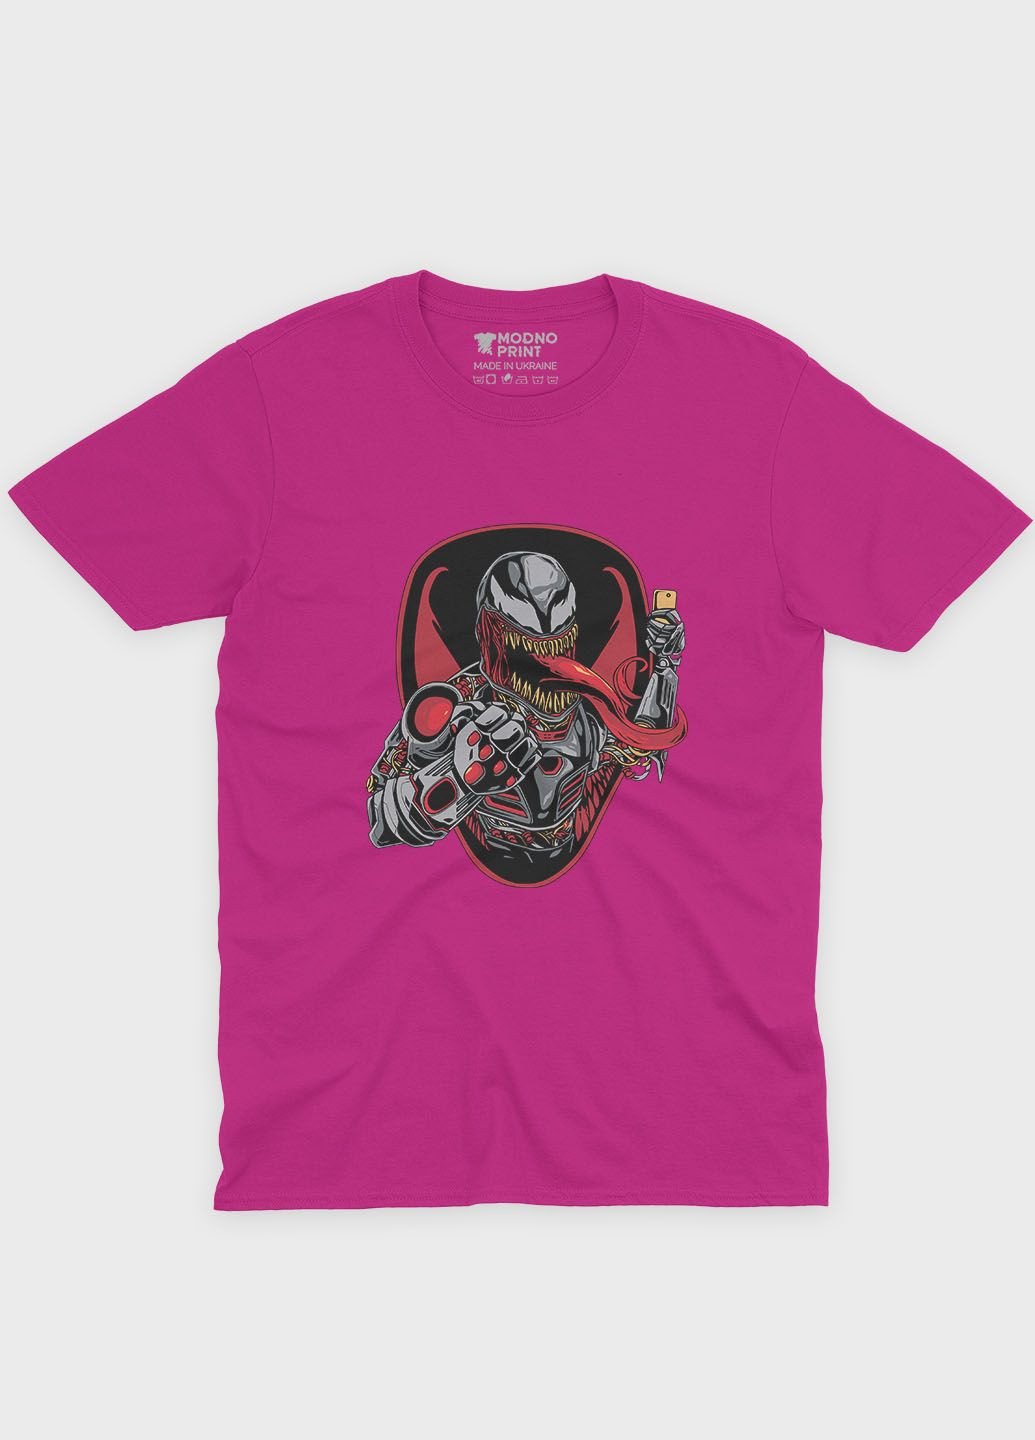 Розовая демисезонная футболка для девочки с принтом супервора - веном (ts001-1-fuxj-006-013-032-g) Modno